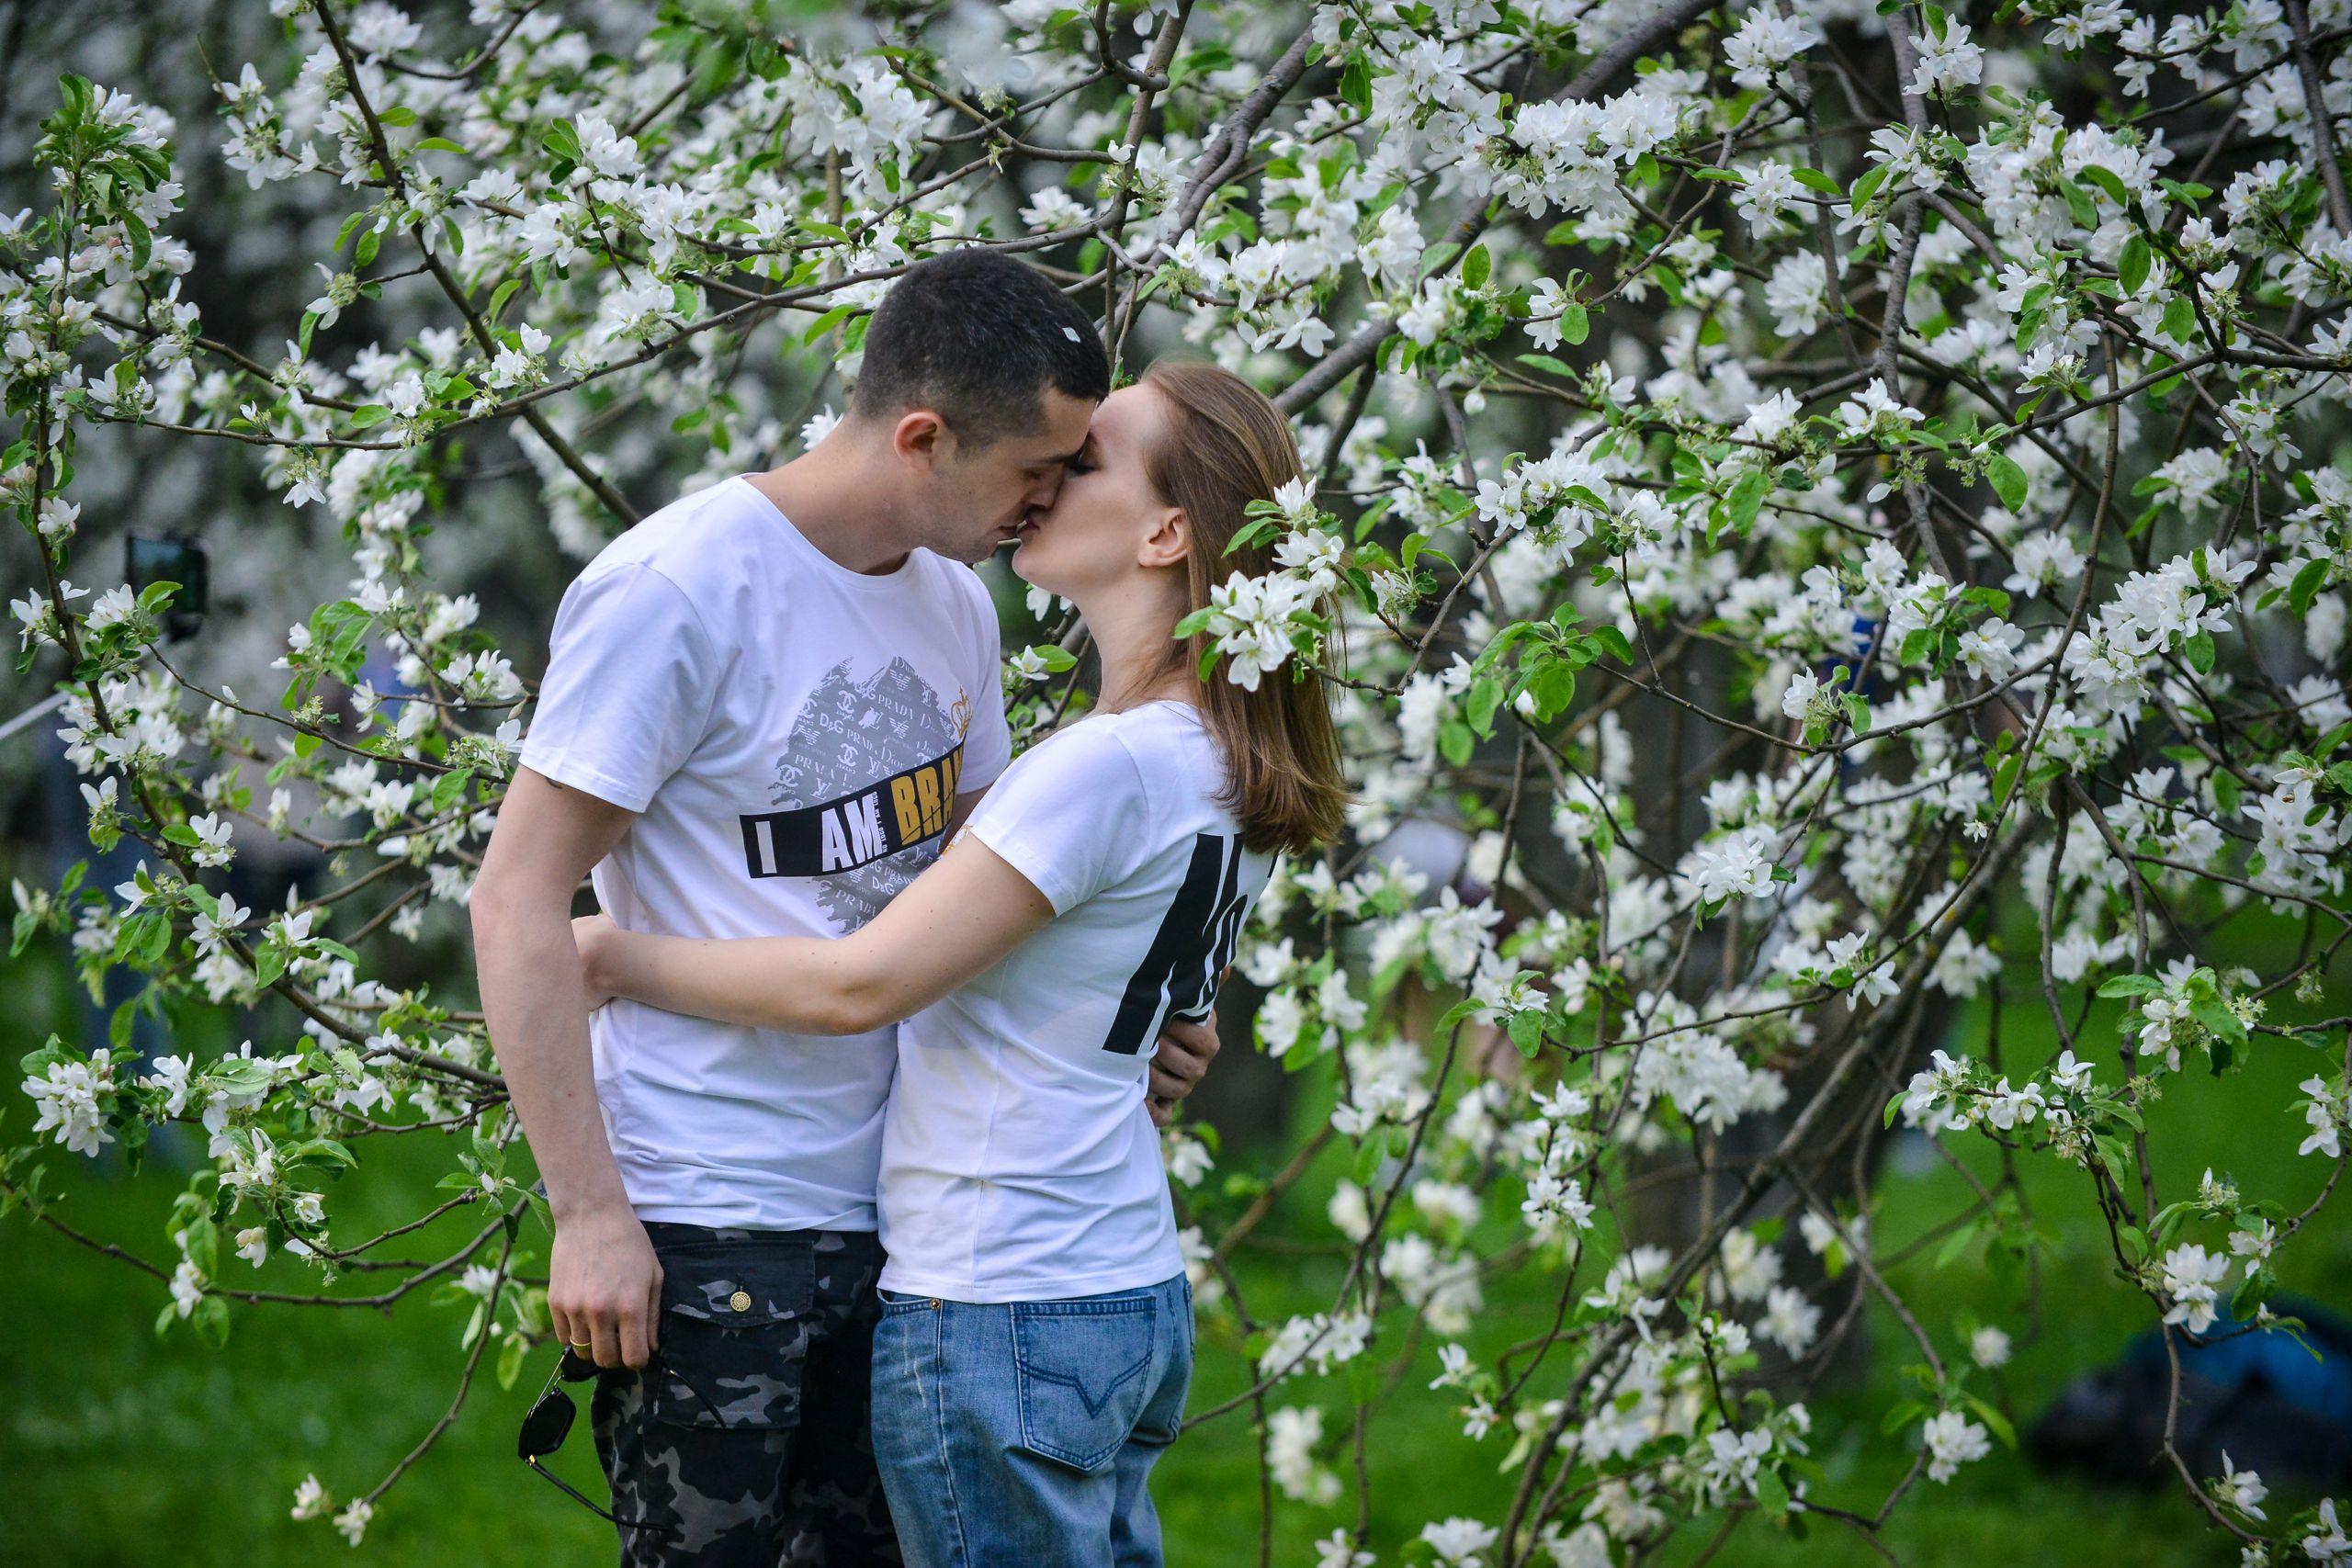 Яблоневый сад для свиданий откроется в Москве к фестивалю «Николин день»